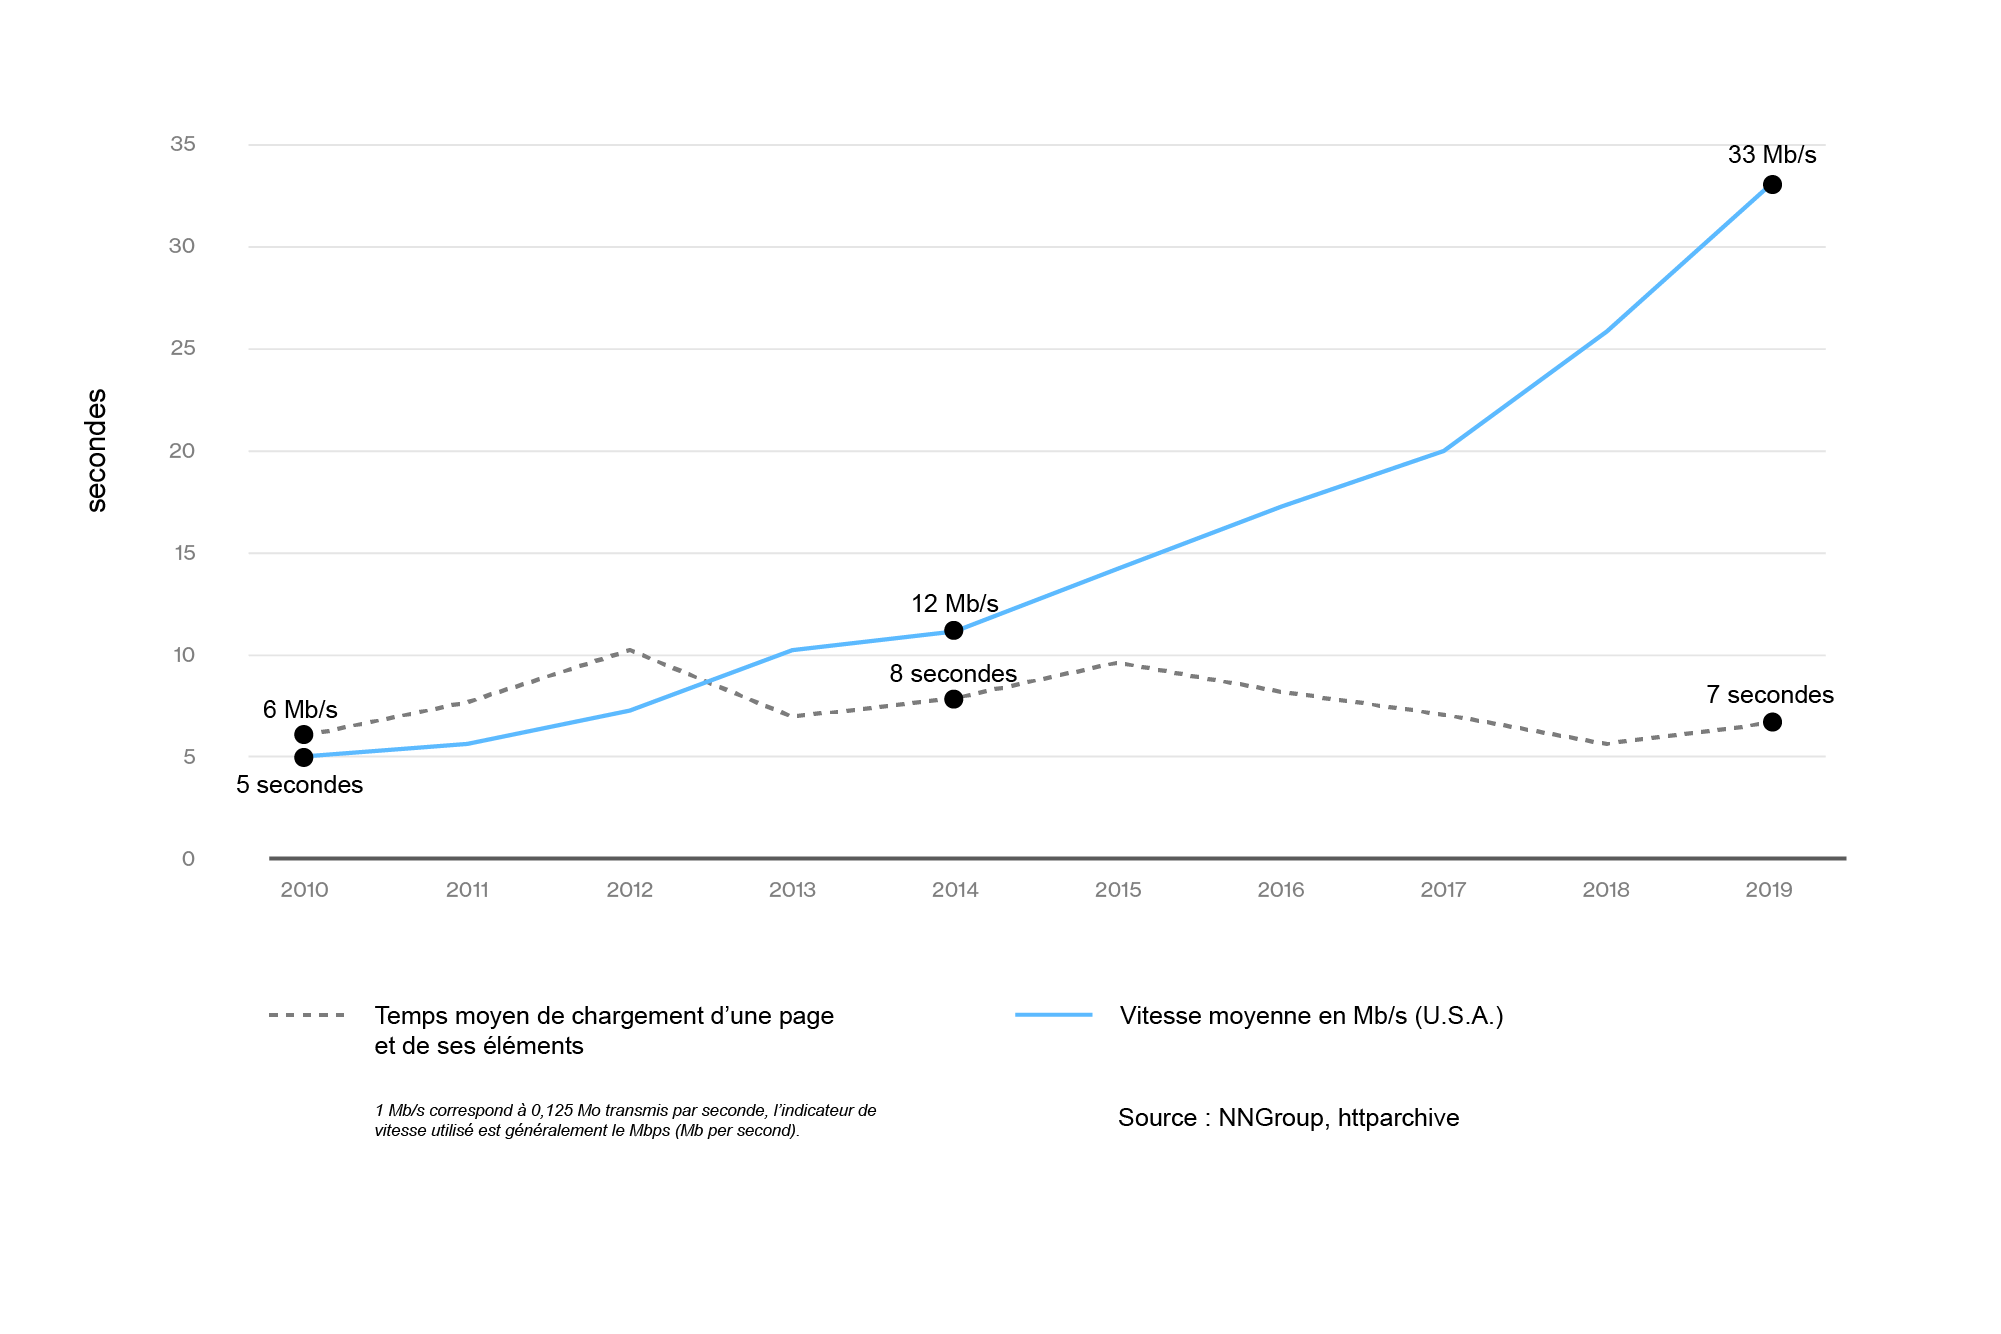 Évolution du temps de chargement d’une page web sur ordinateur par rapport à la vitesse moyenne de connexion entre 2010 et 2019